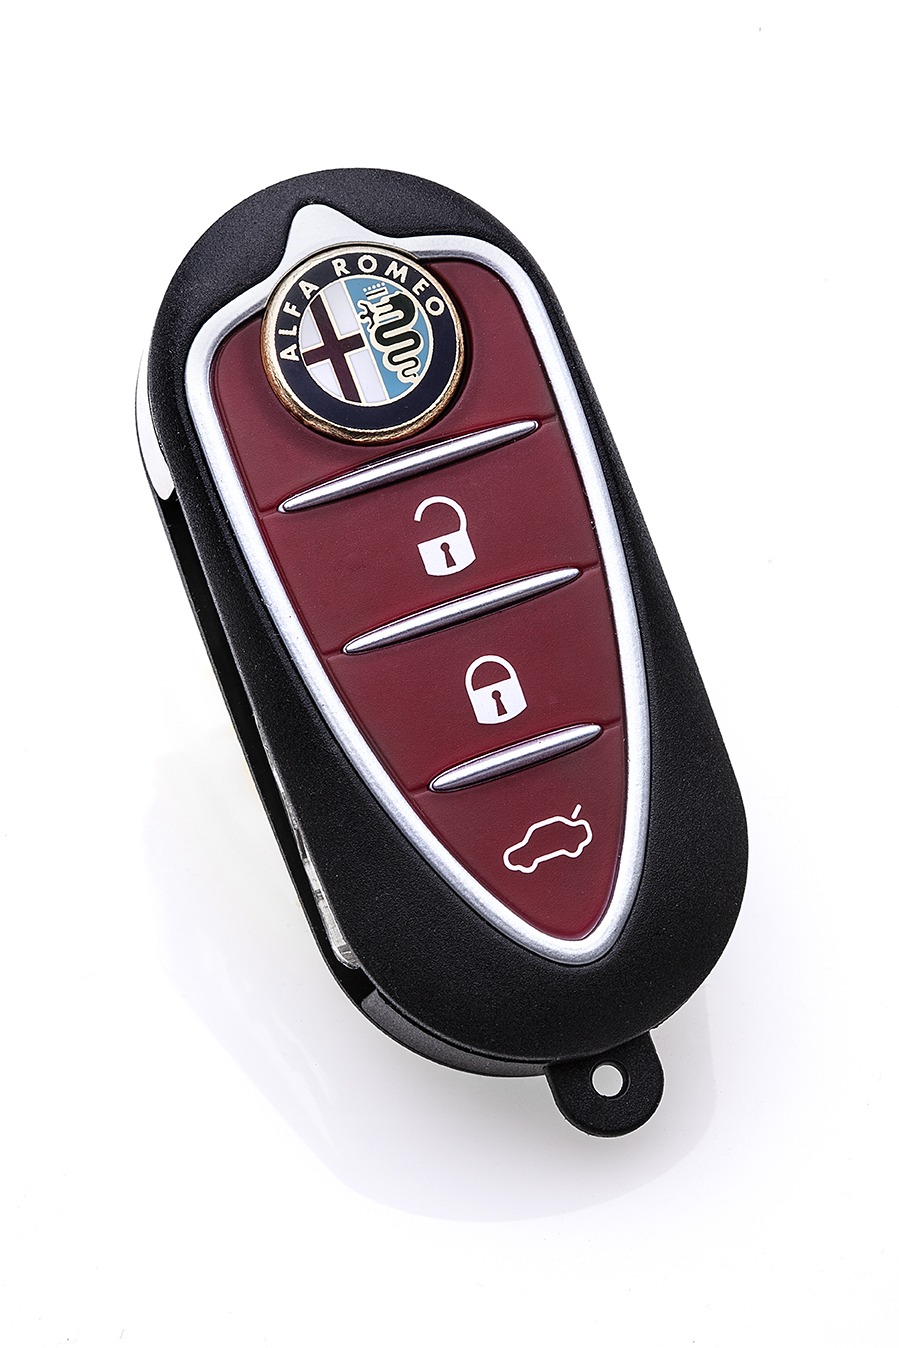 RF Keys A955 Giobert Alfa Romeo | Chiavi RF A955 Giobert Alfa Romeo